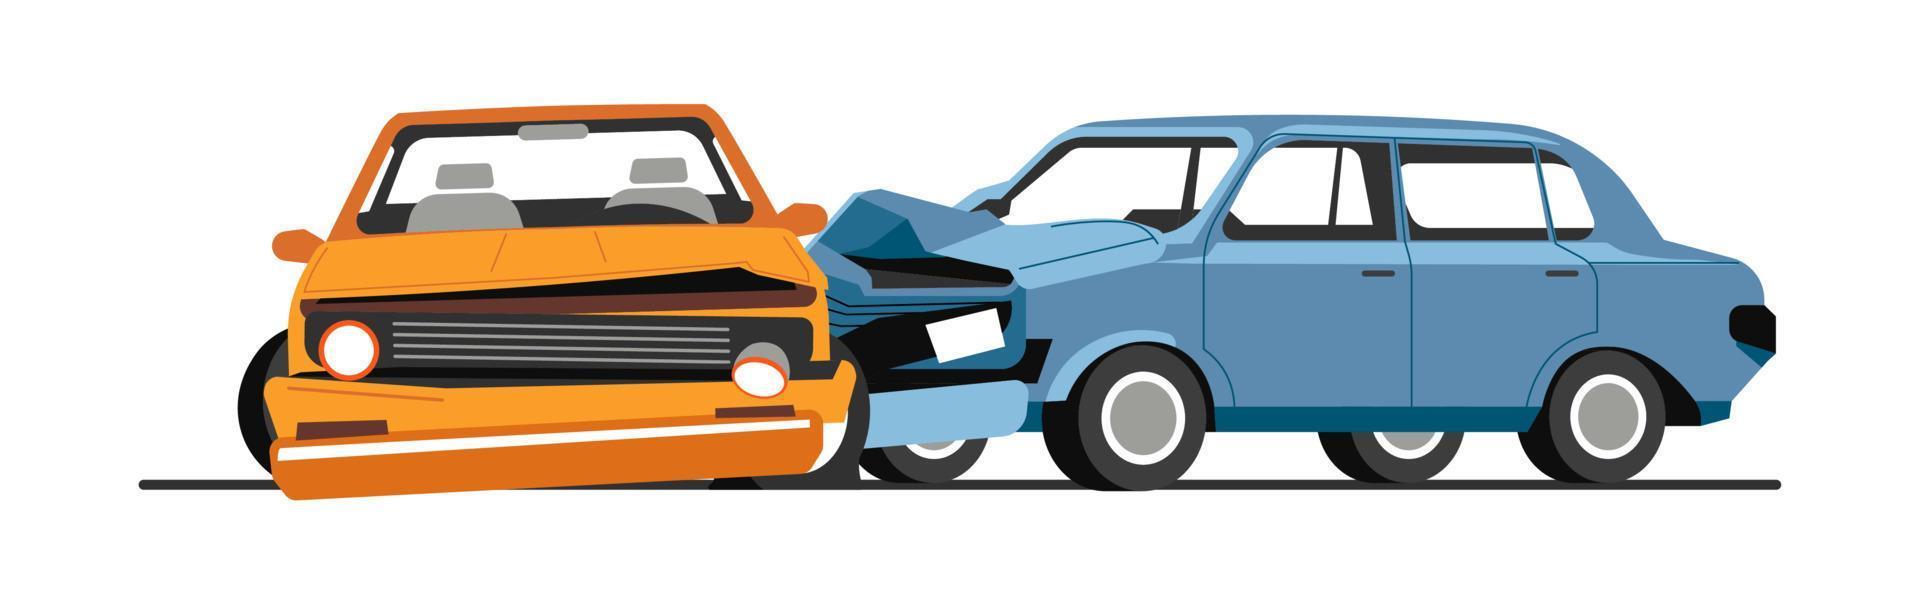 verkeer botsing van auto's, weg ongeluk van voertuigen vector